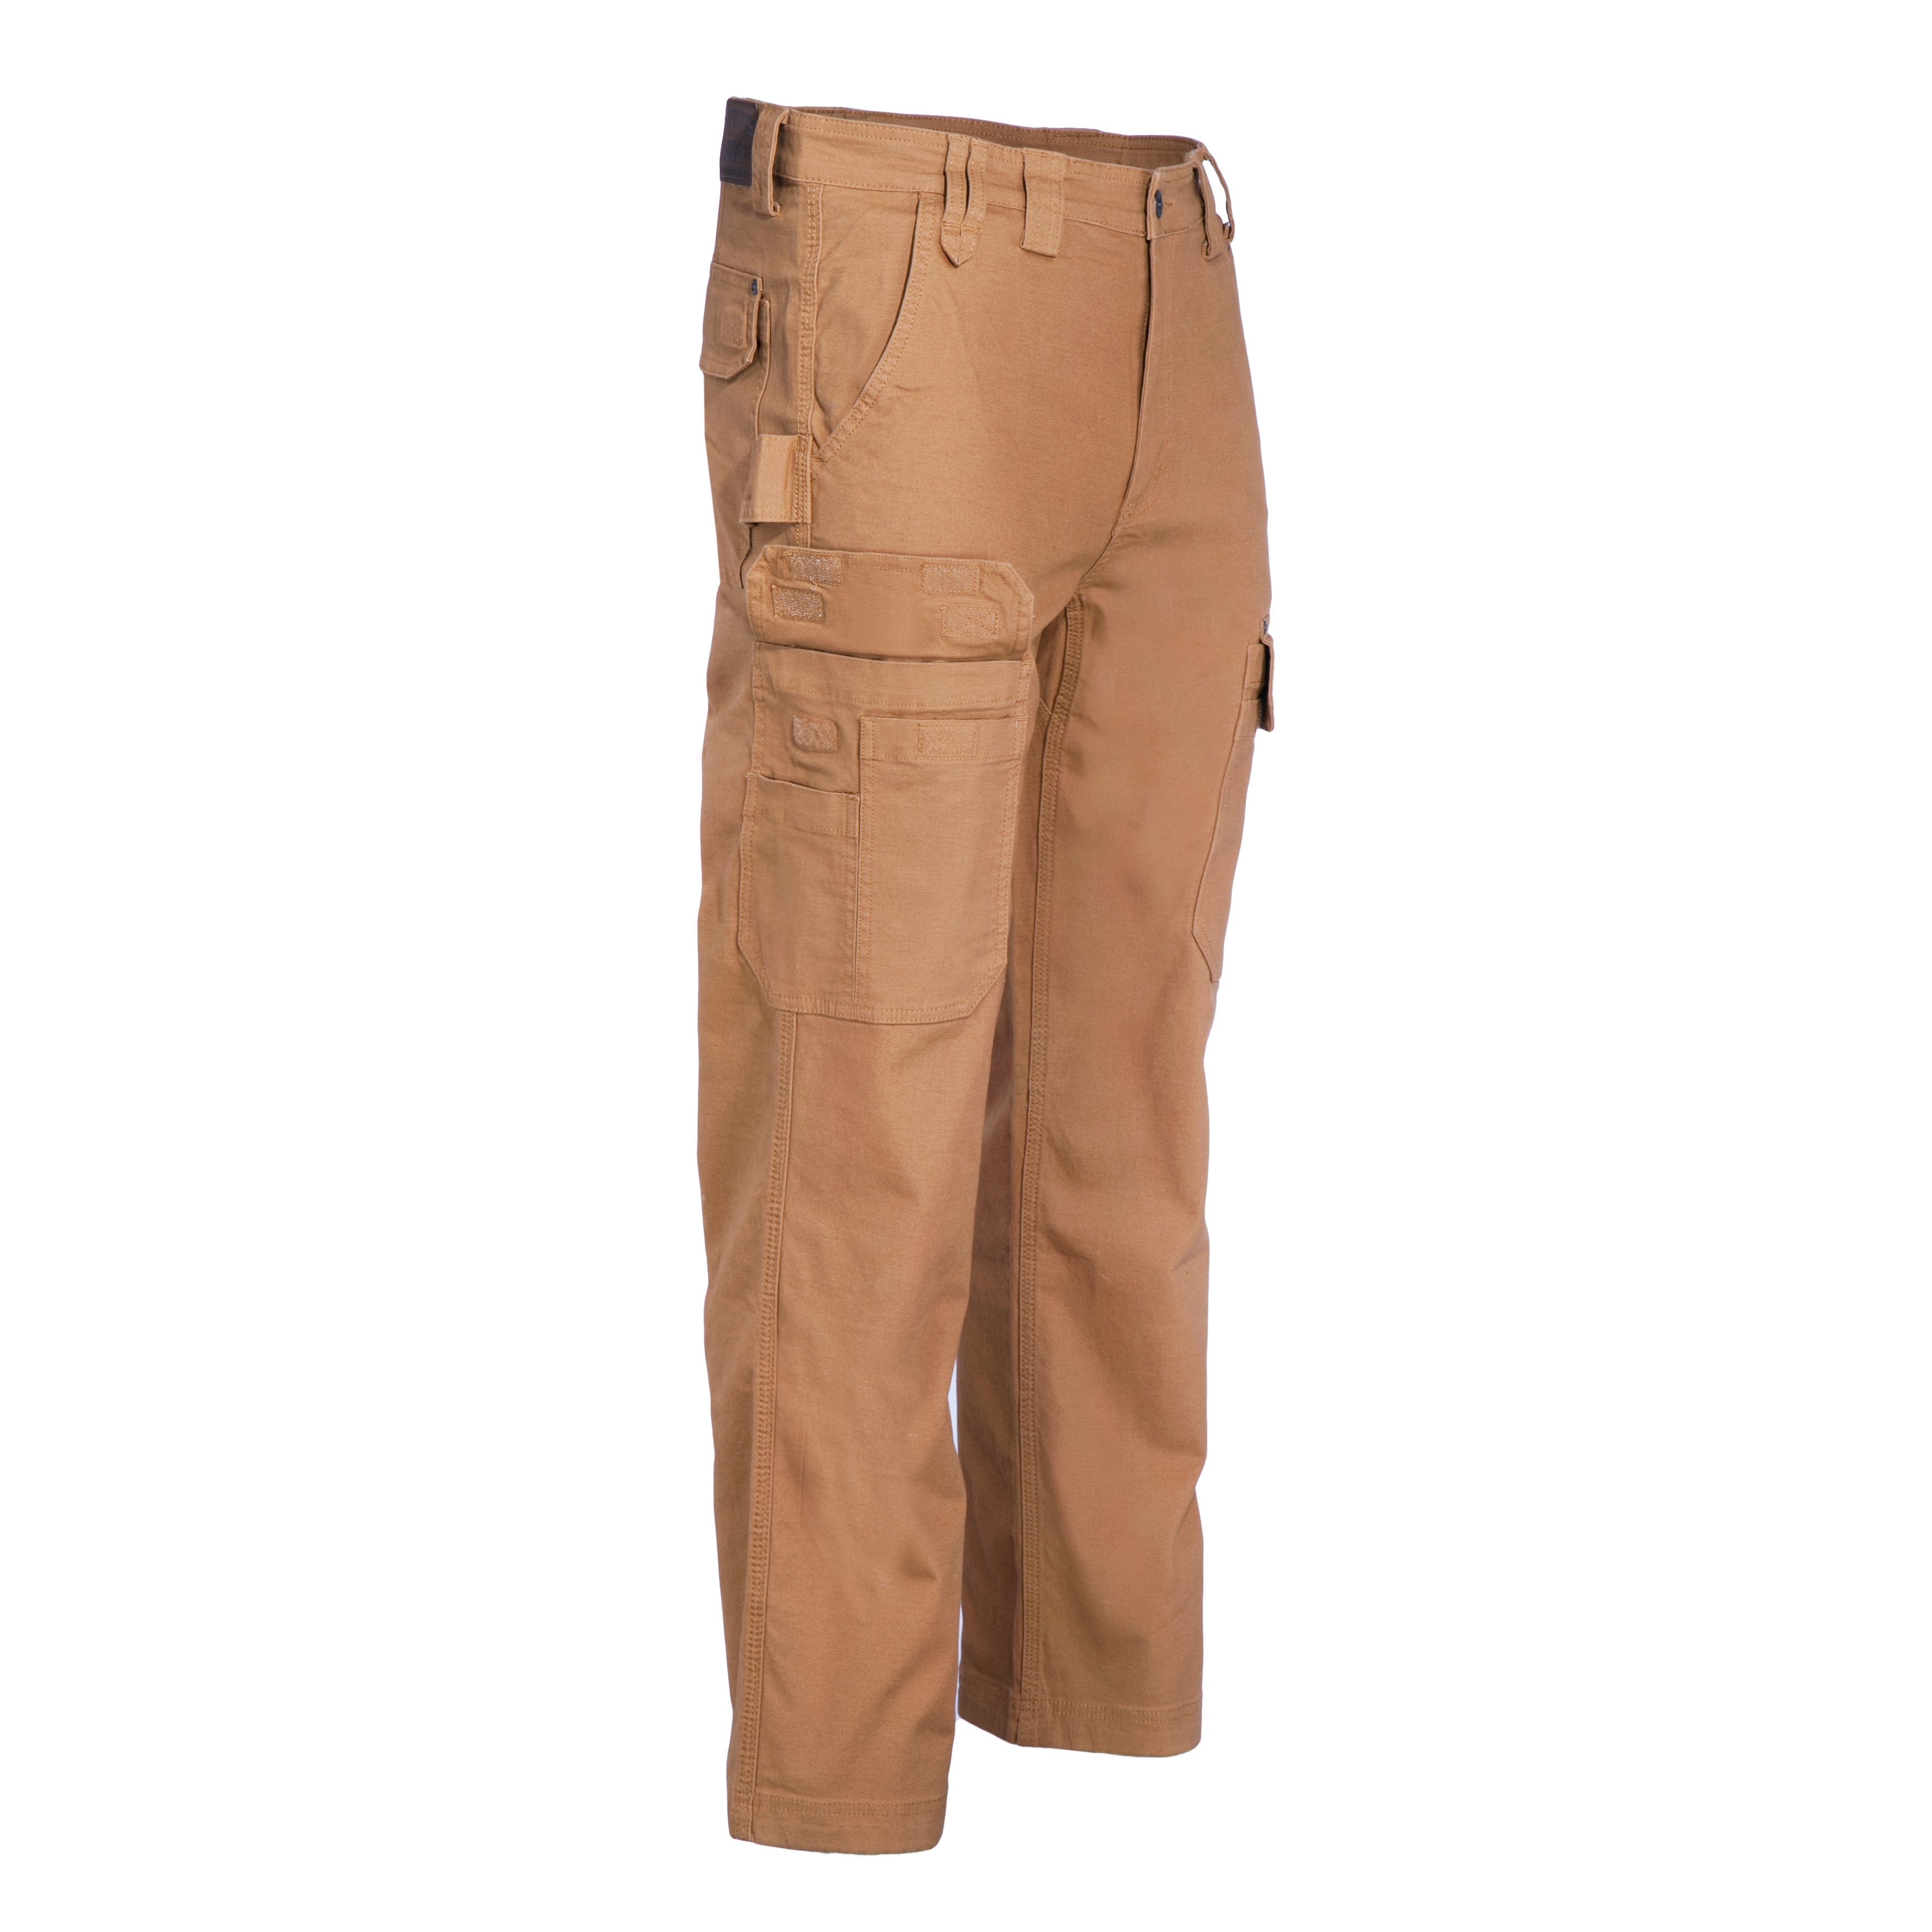 smith's workwear cargo pants